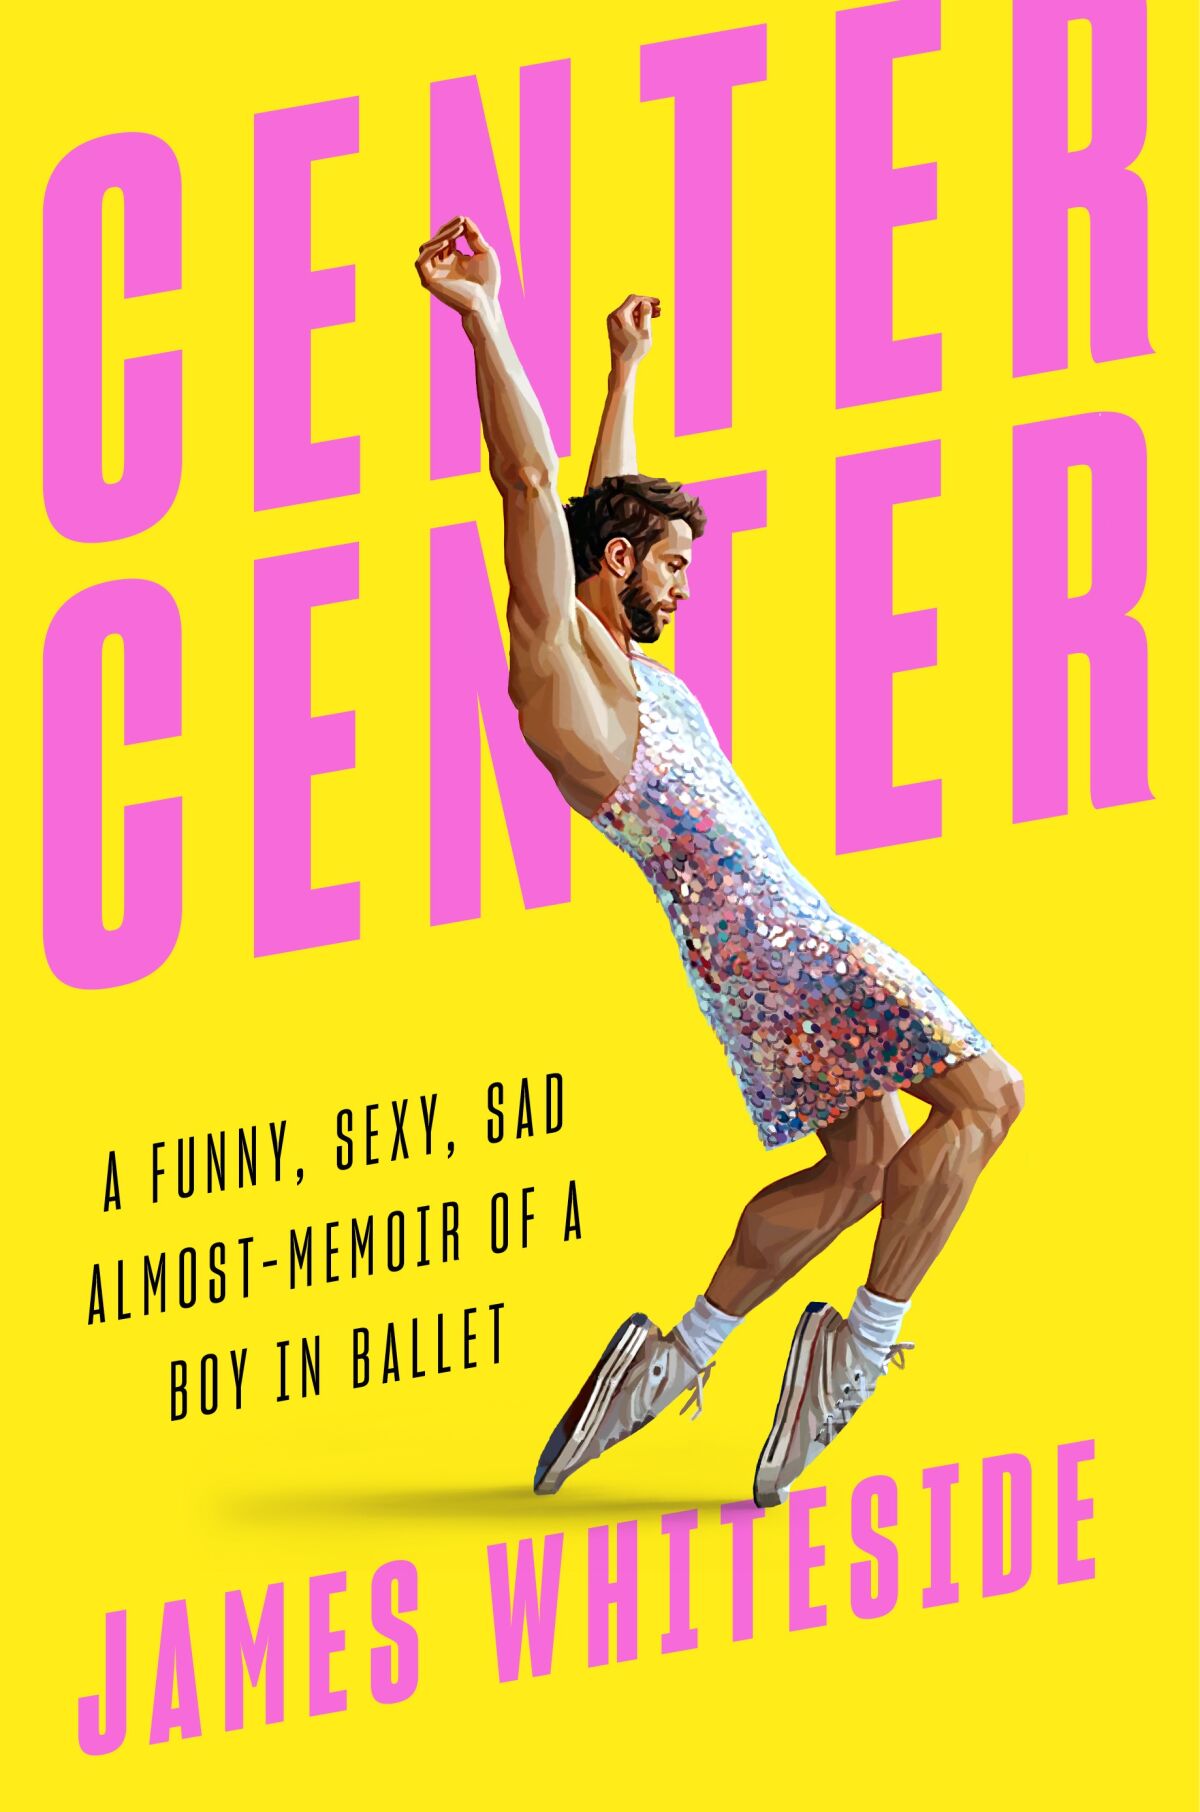 The cover of dancer James Whiteside's book, "Center Center."